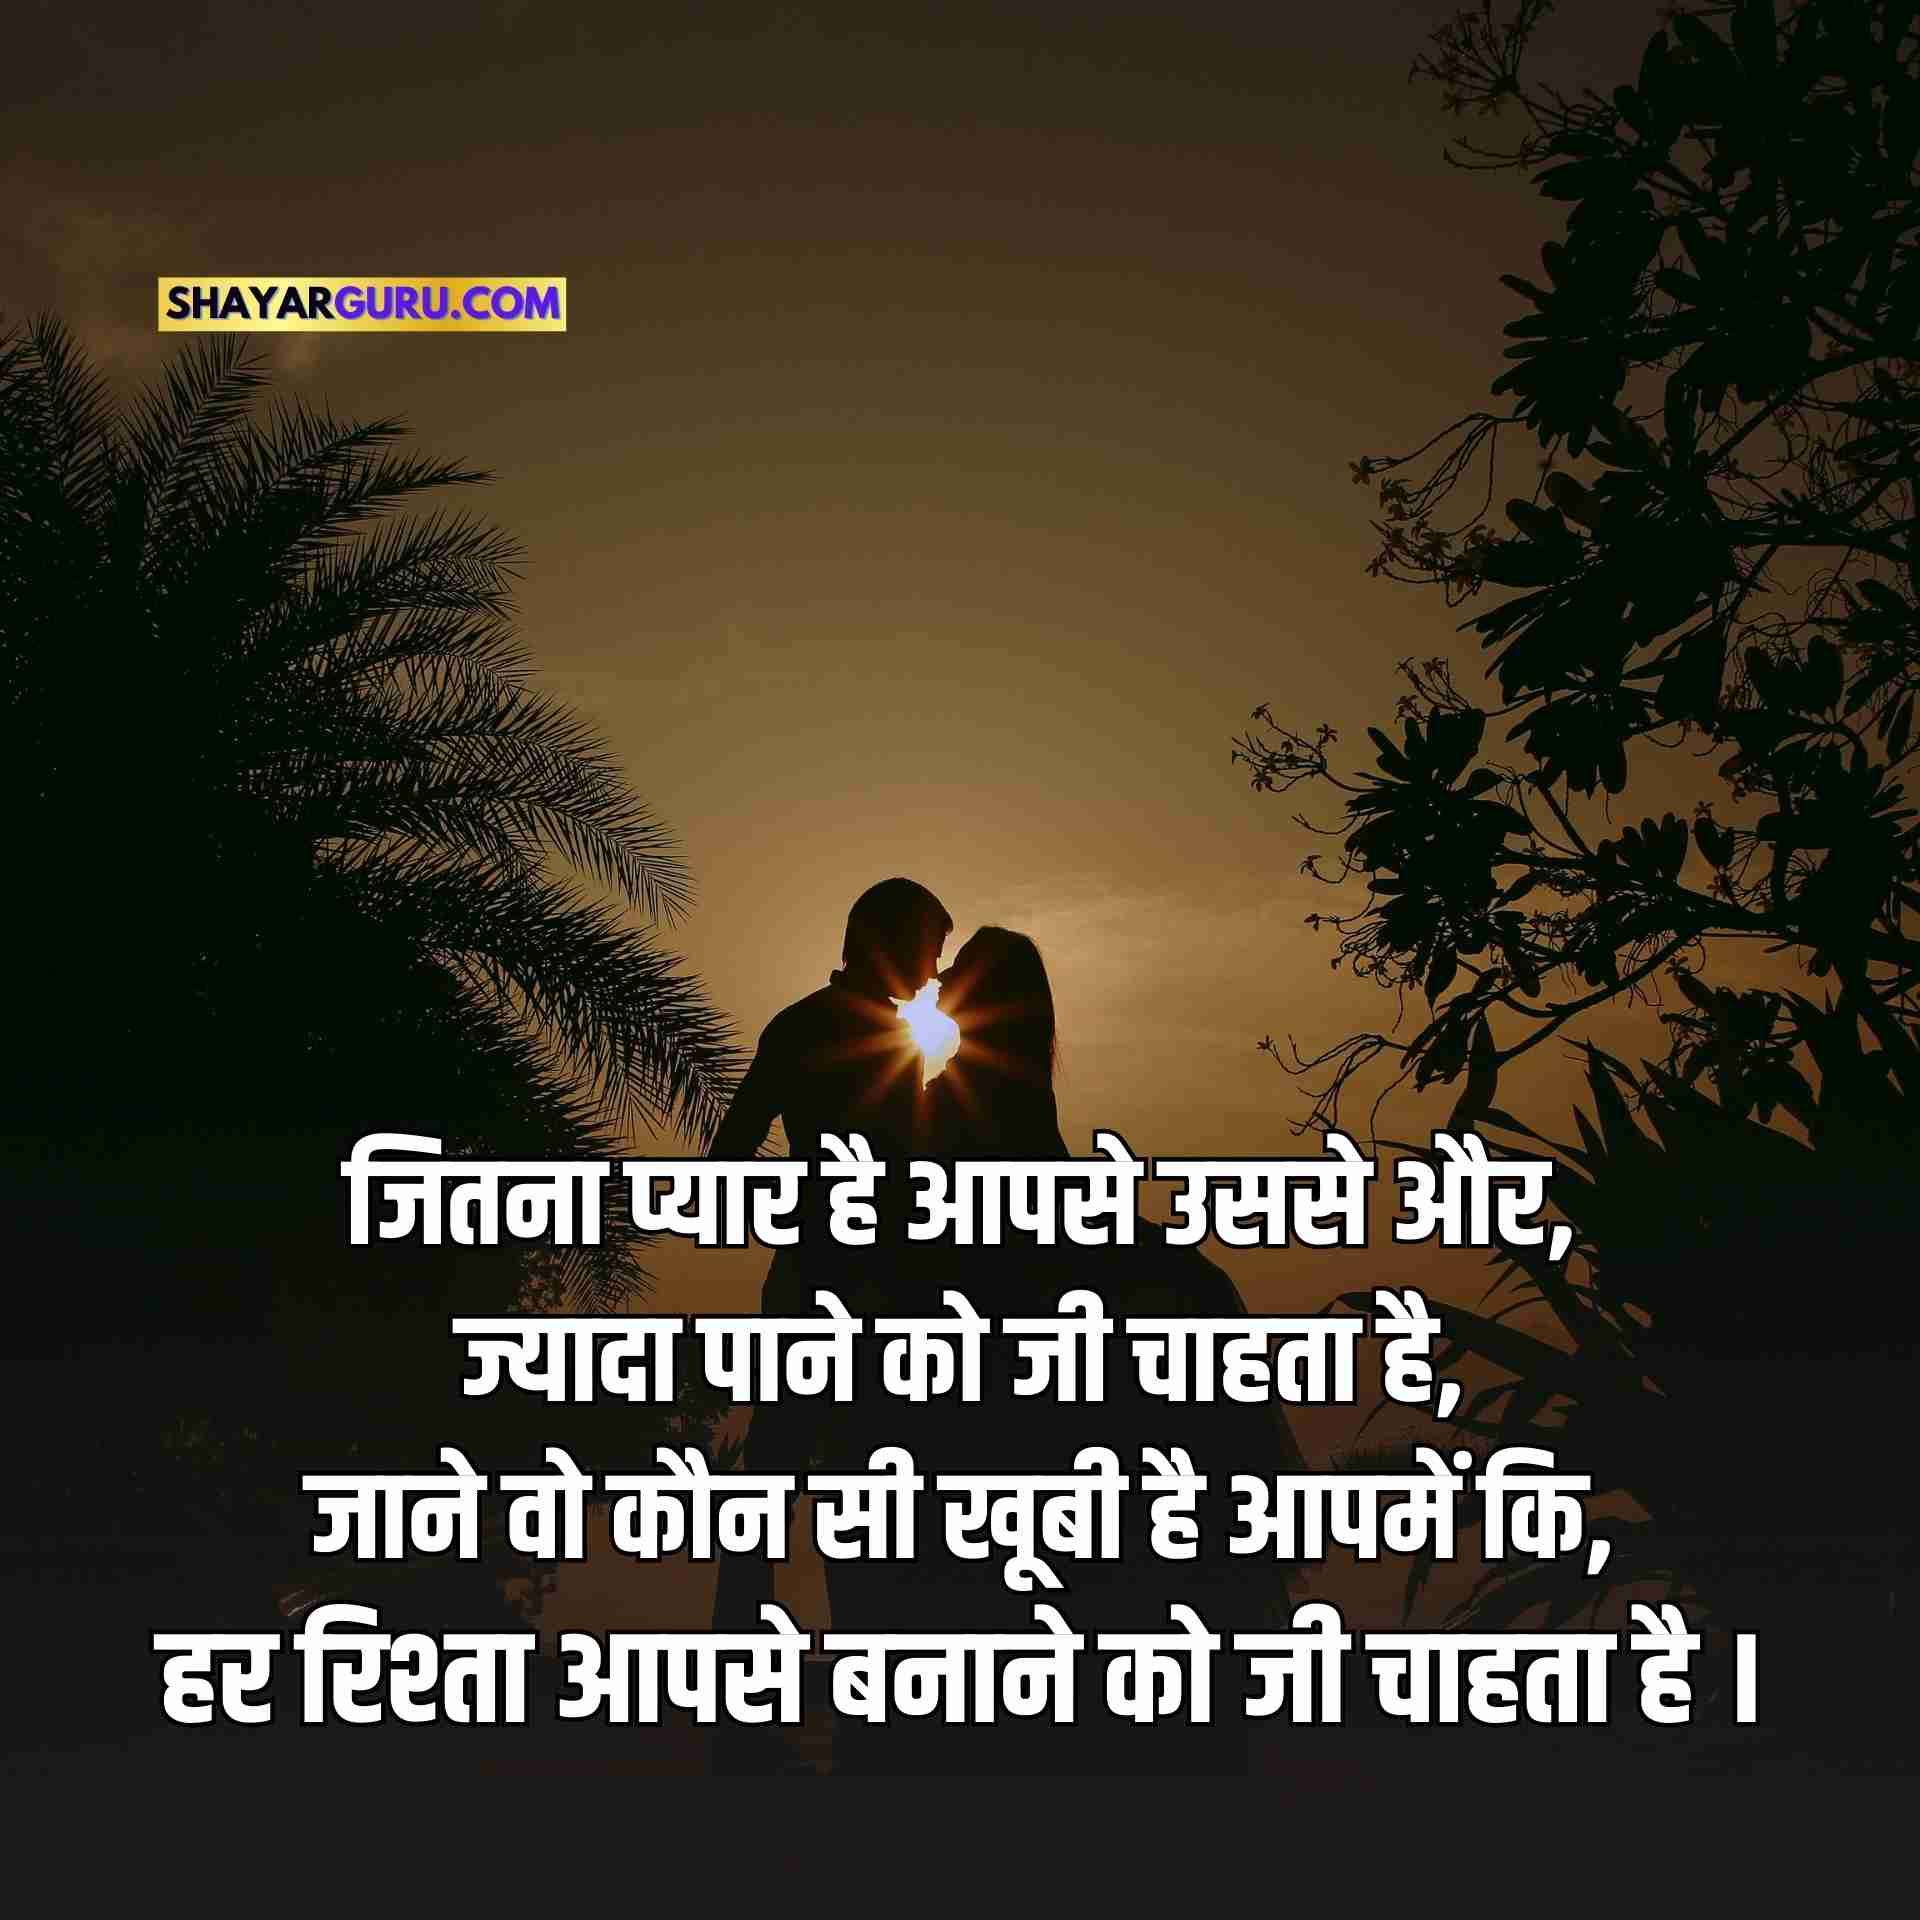 Romantic Shayari Image for Whatsapp